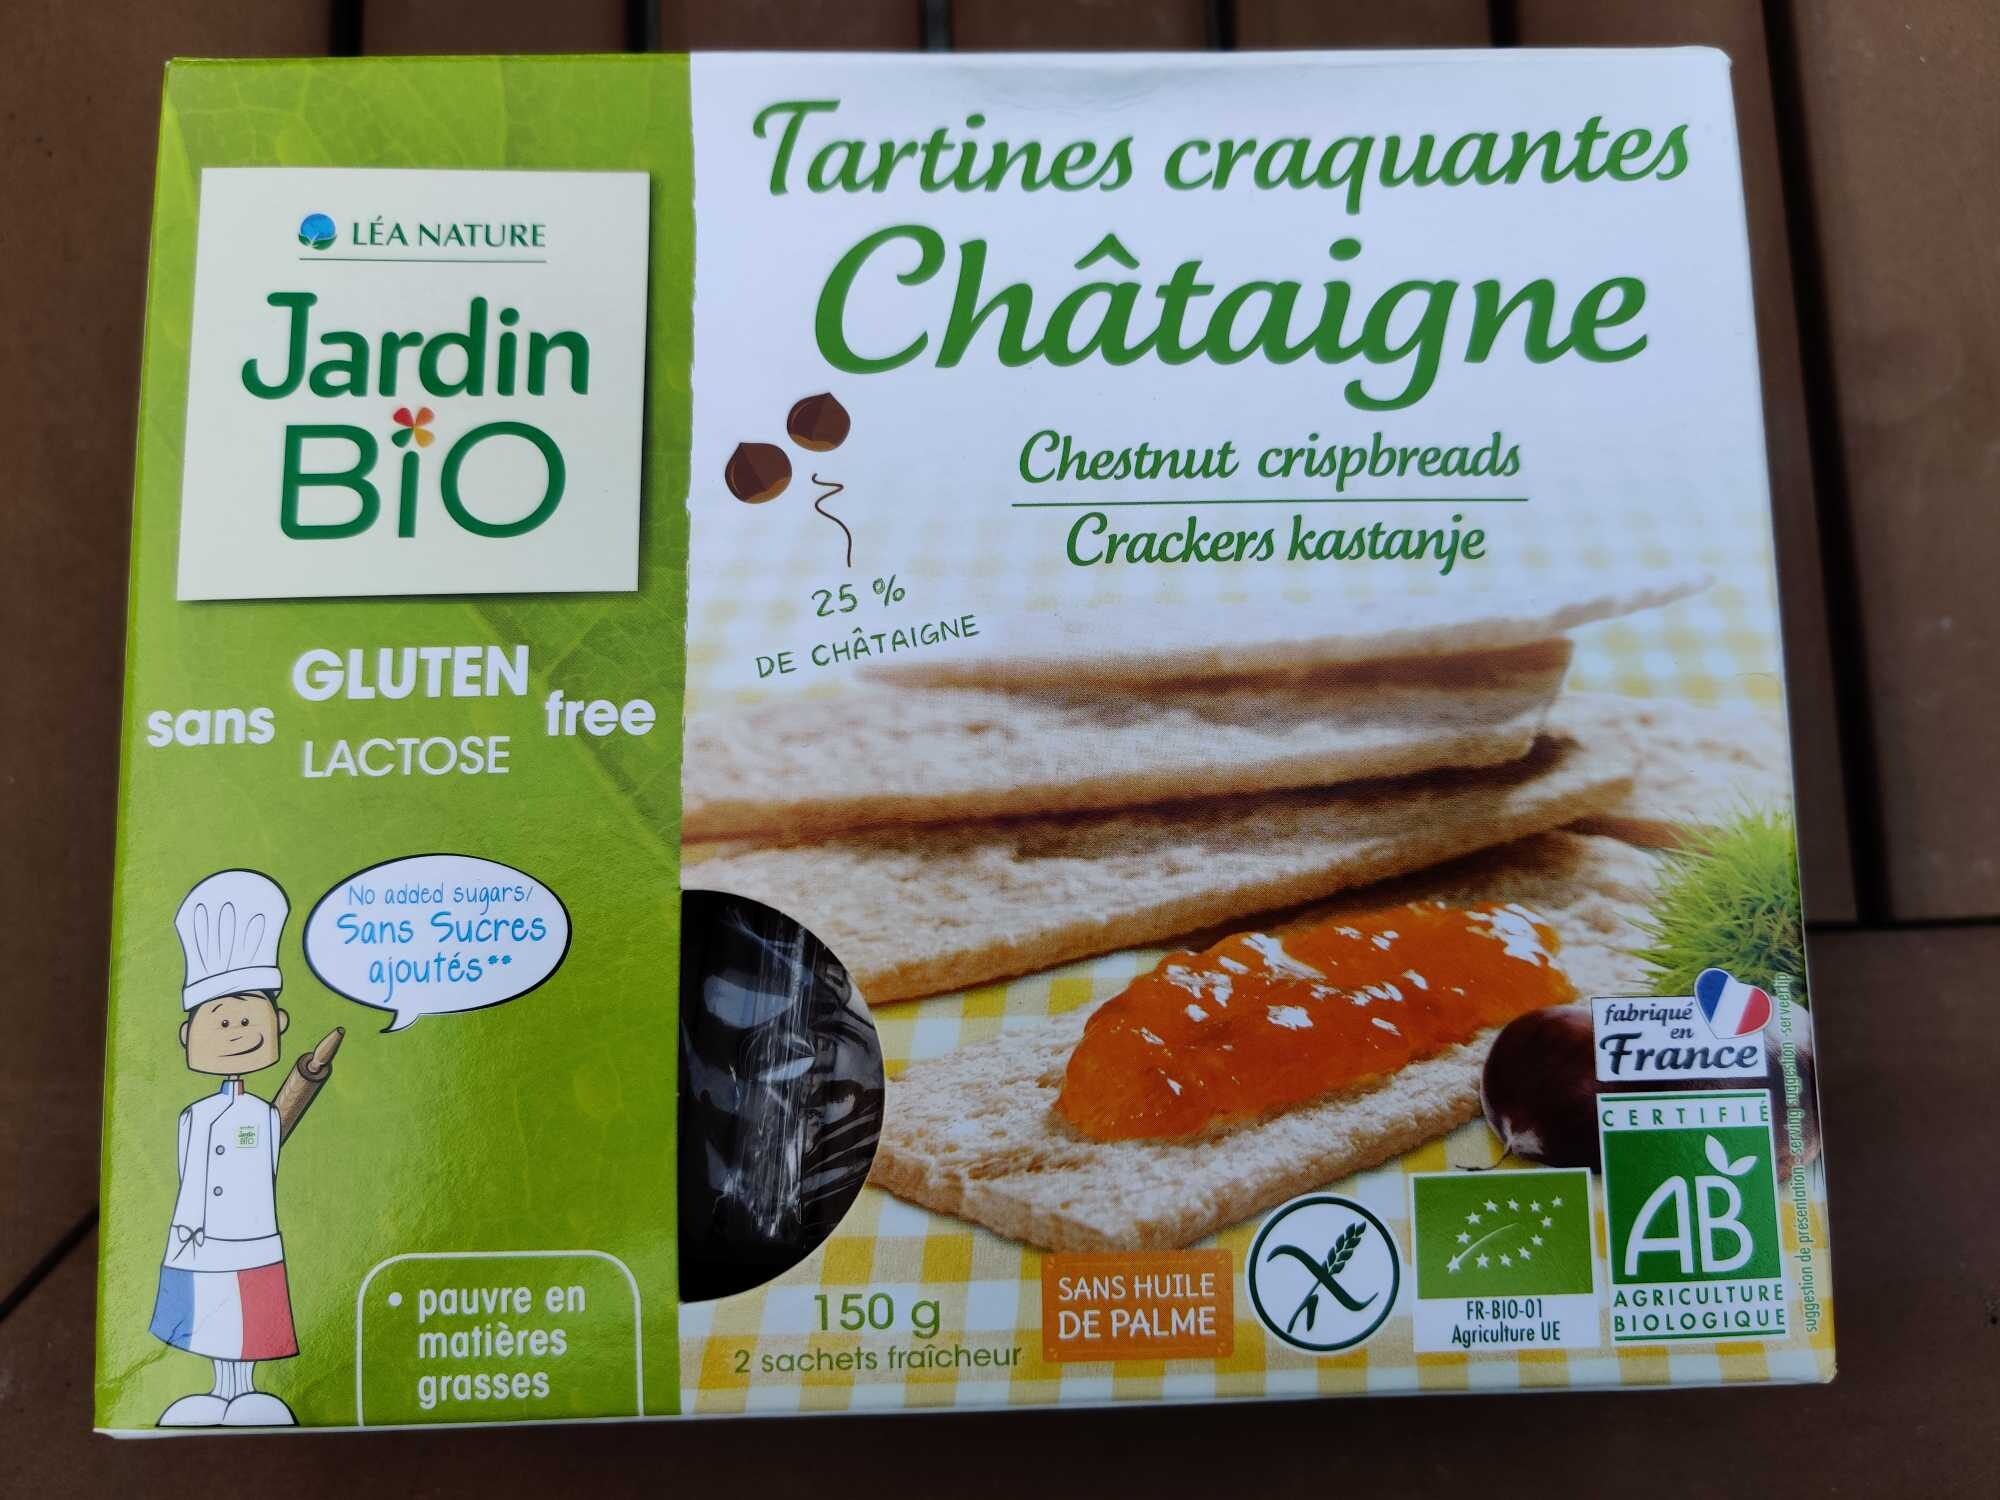 Tartines craquant es châtaigne - מוצר - fr